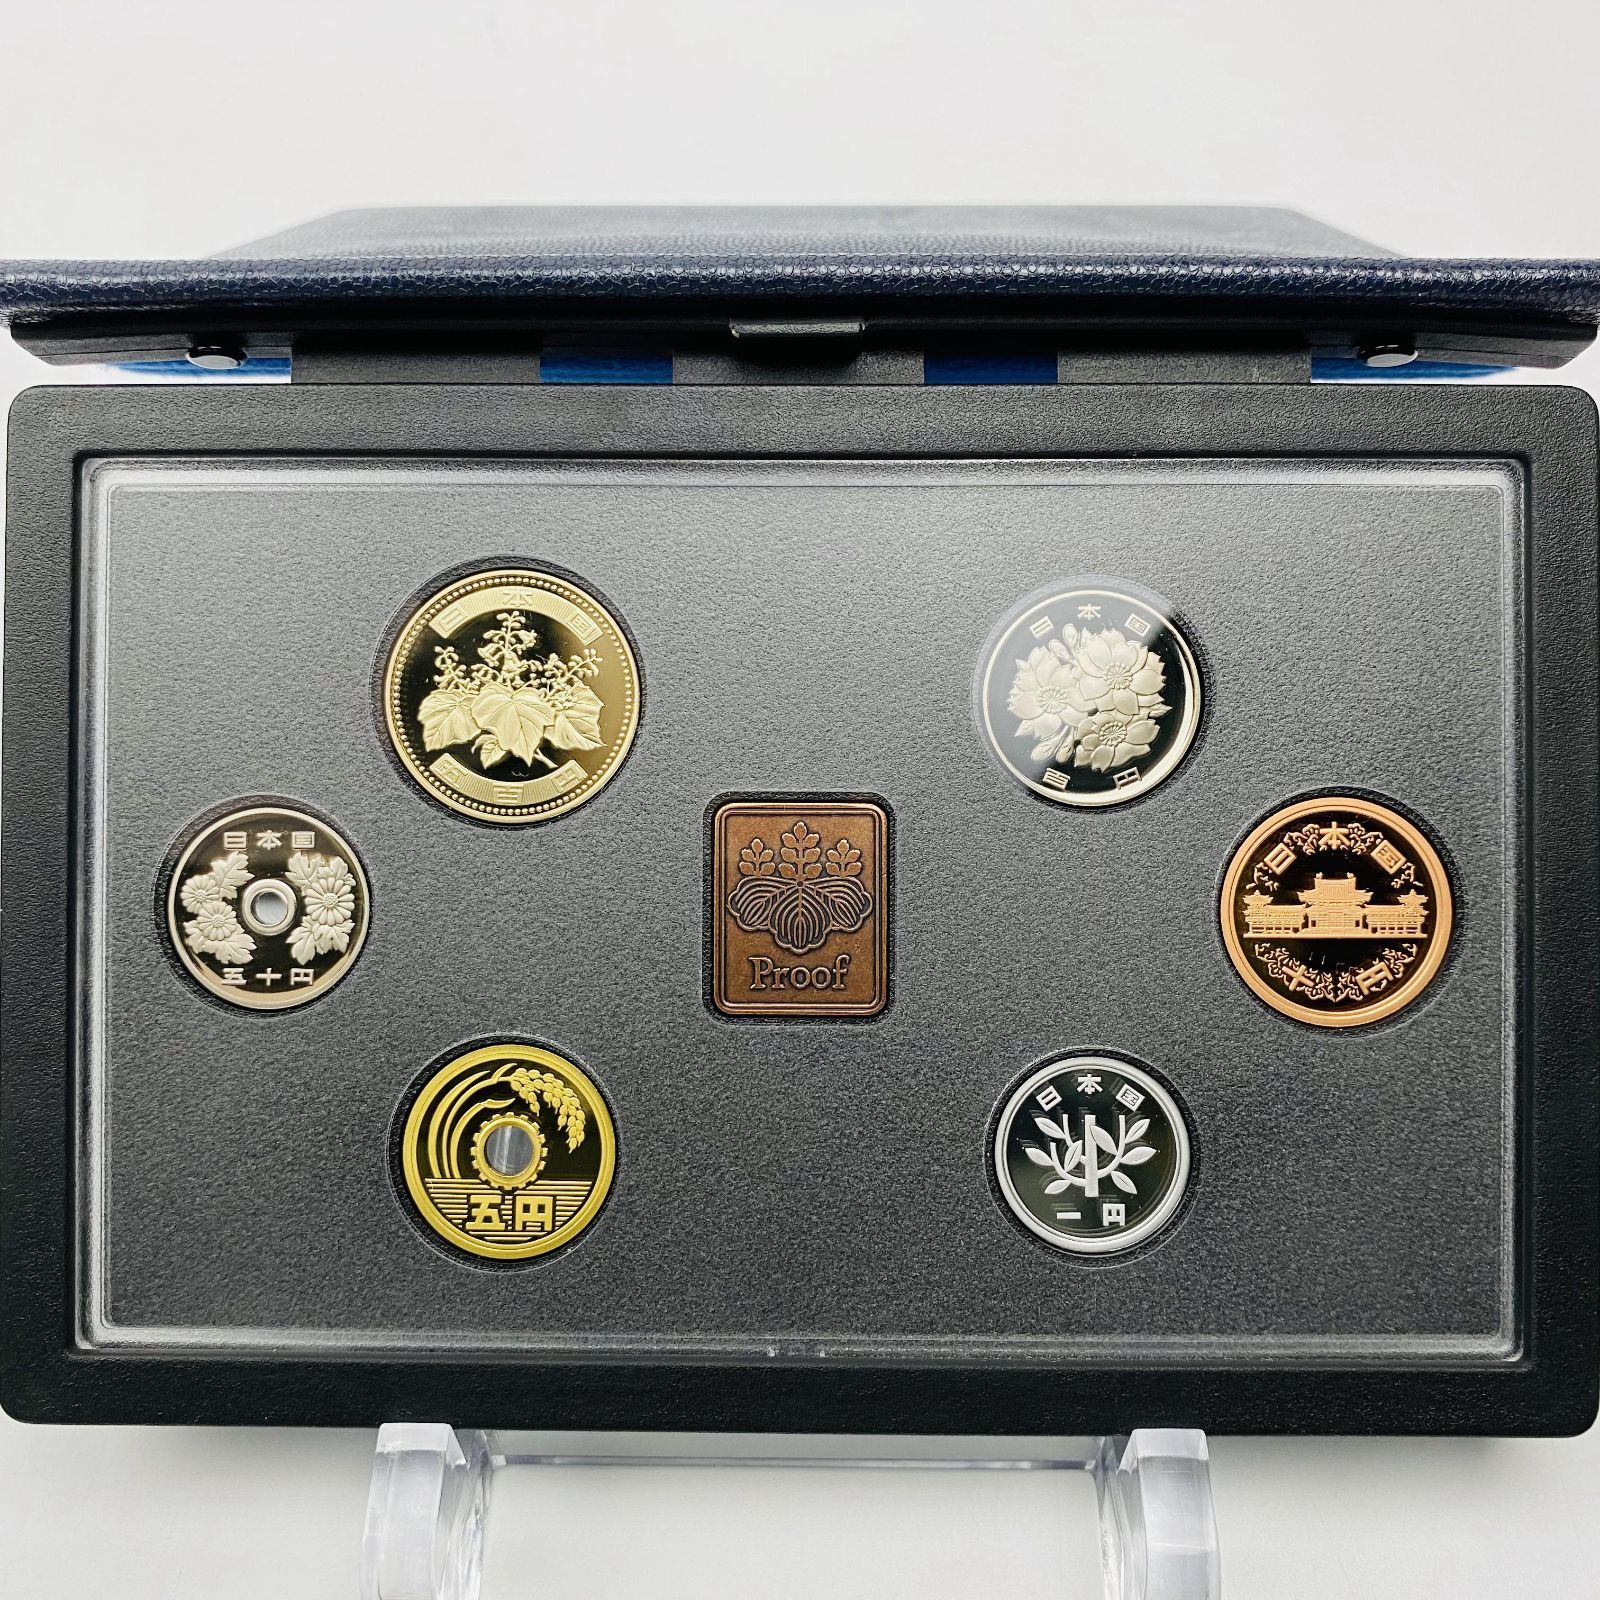 プルーフ貨幣セット 2006年 平成18年 額面666円 年銘板有 全揃い 通常